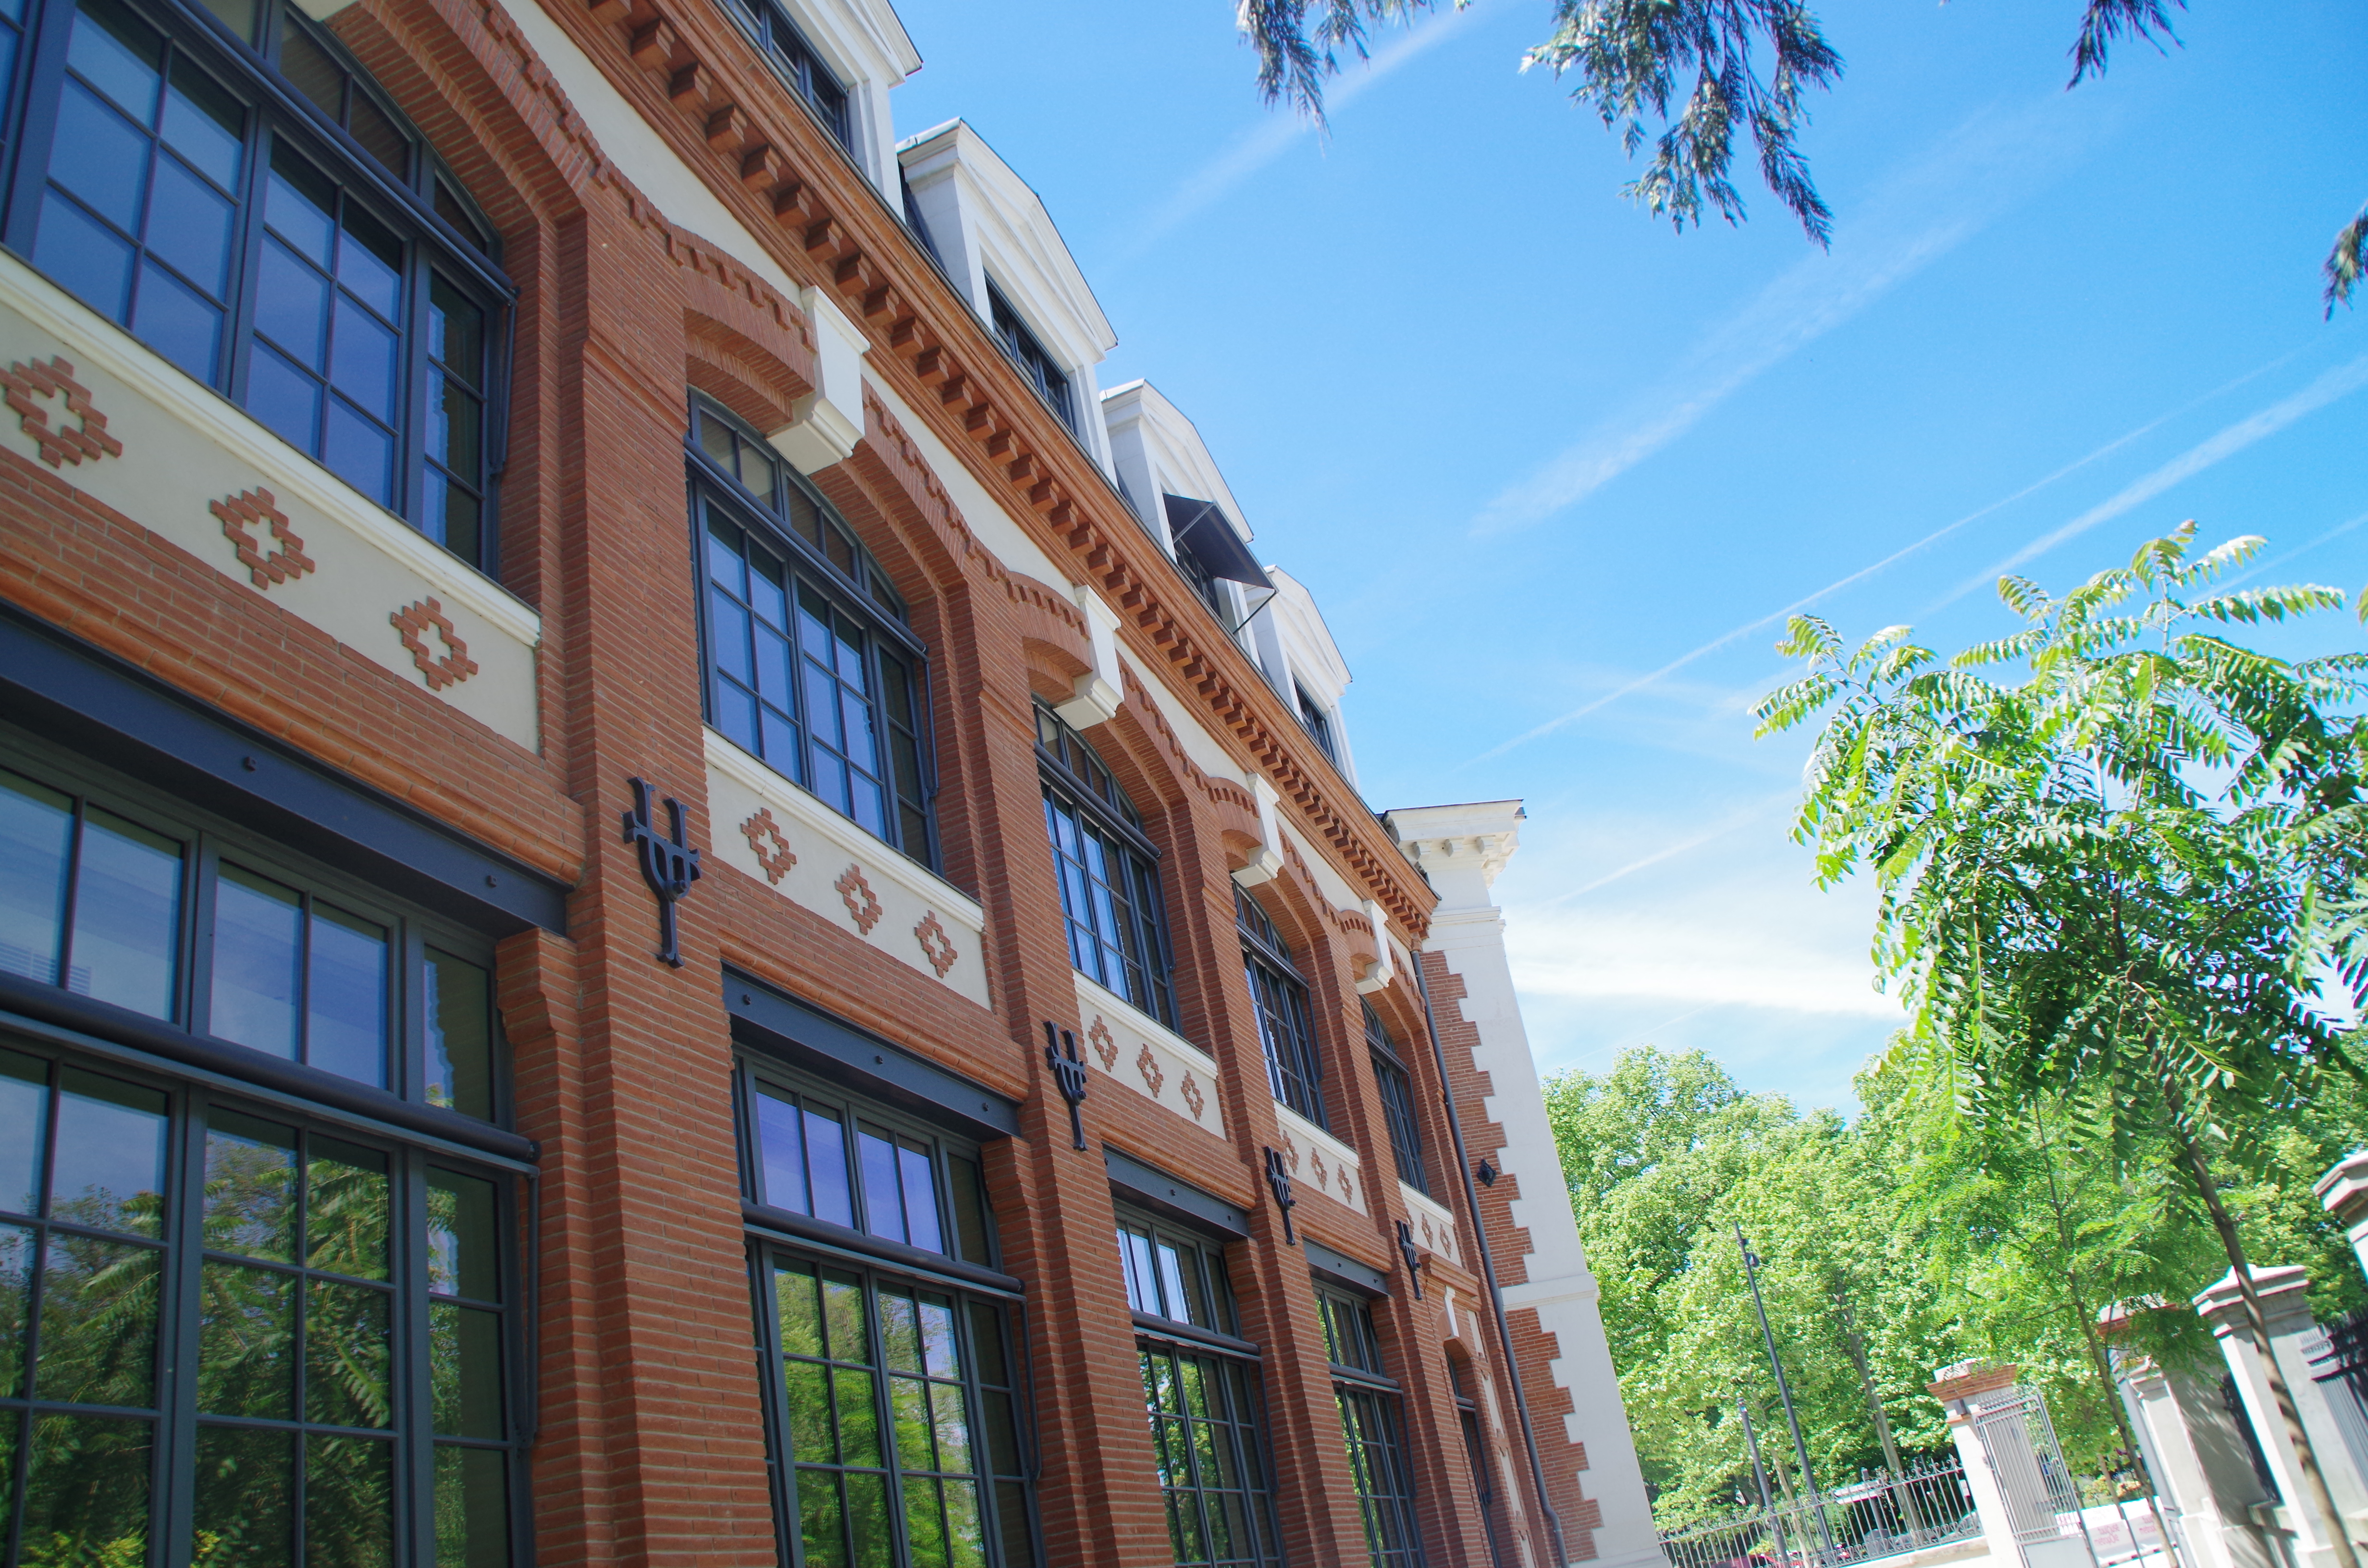 Université de Toulouse - #LundiOsni Saurez-vous reconnaître cet